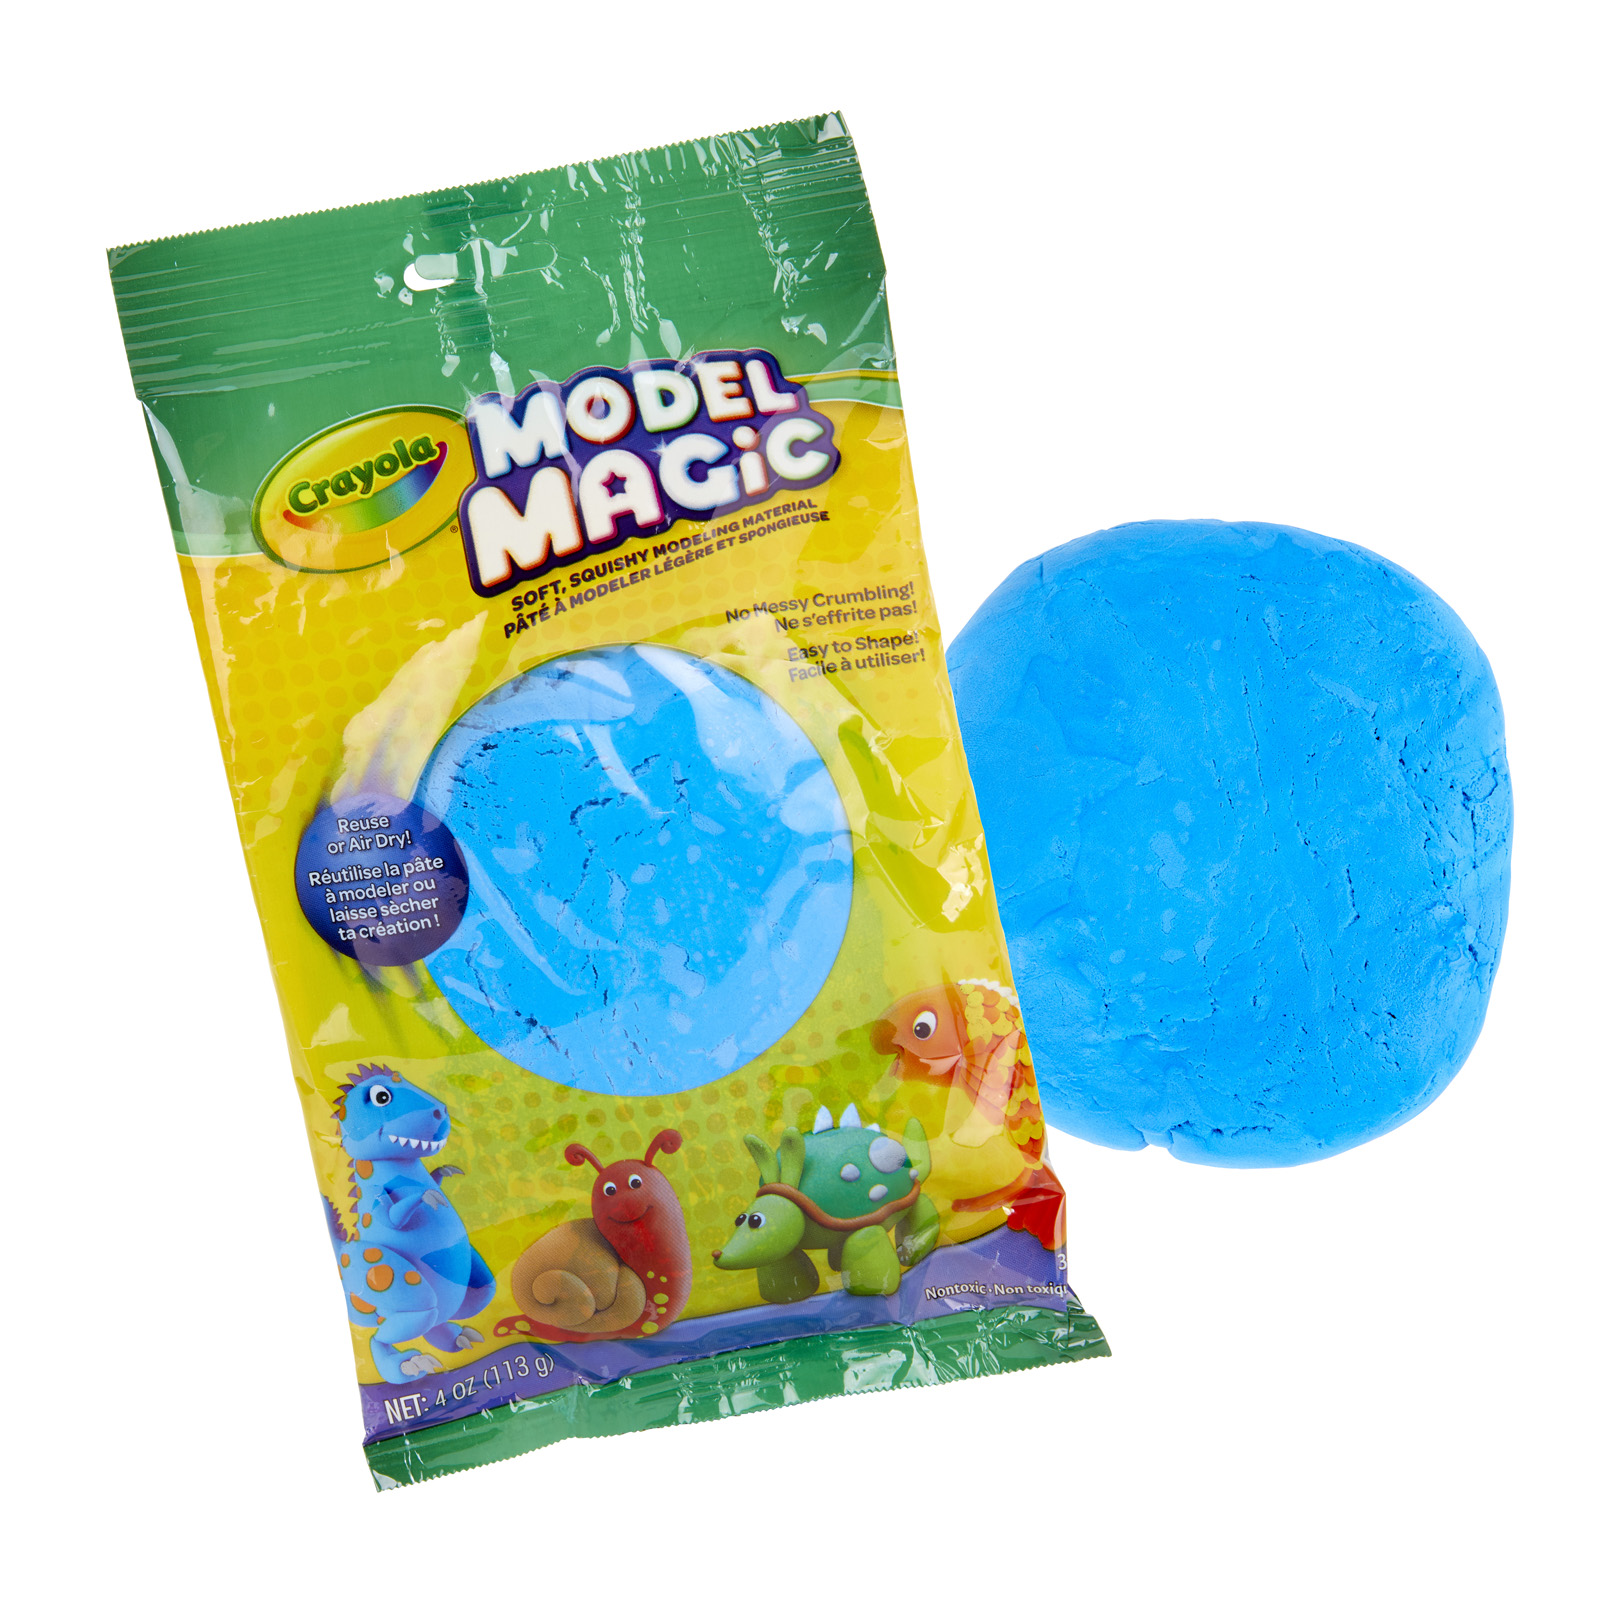  Crayola Model Magic Modeling Compound, Blue, 4 oz